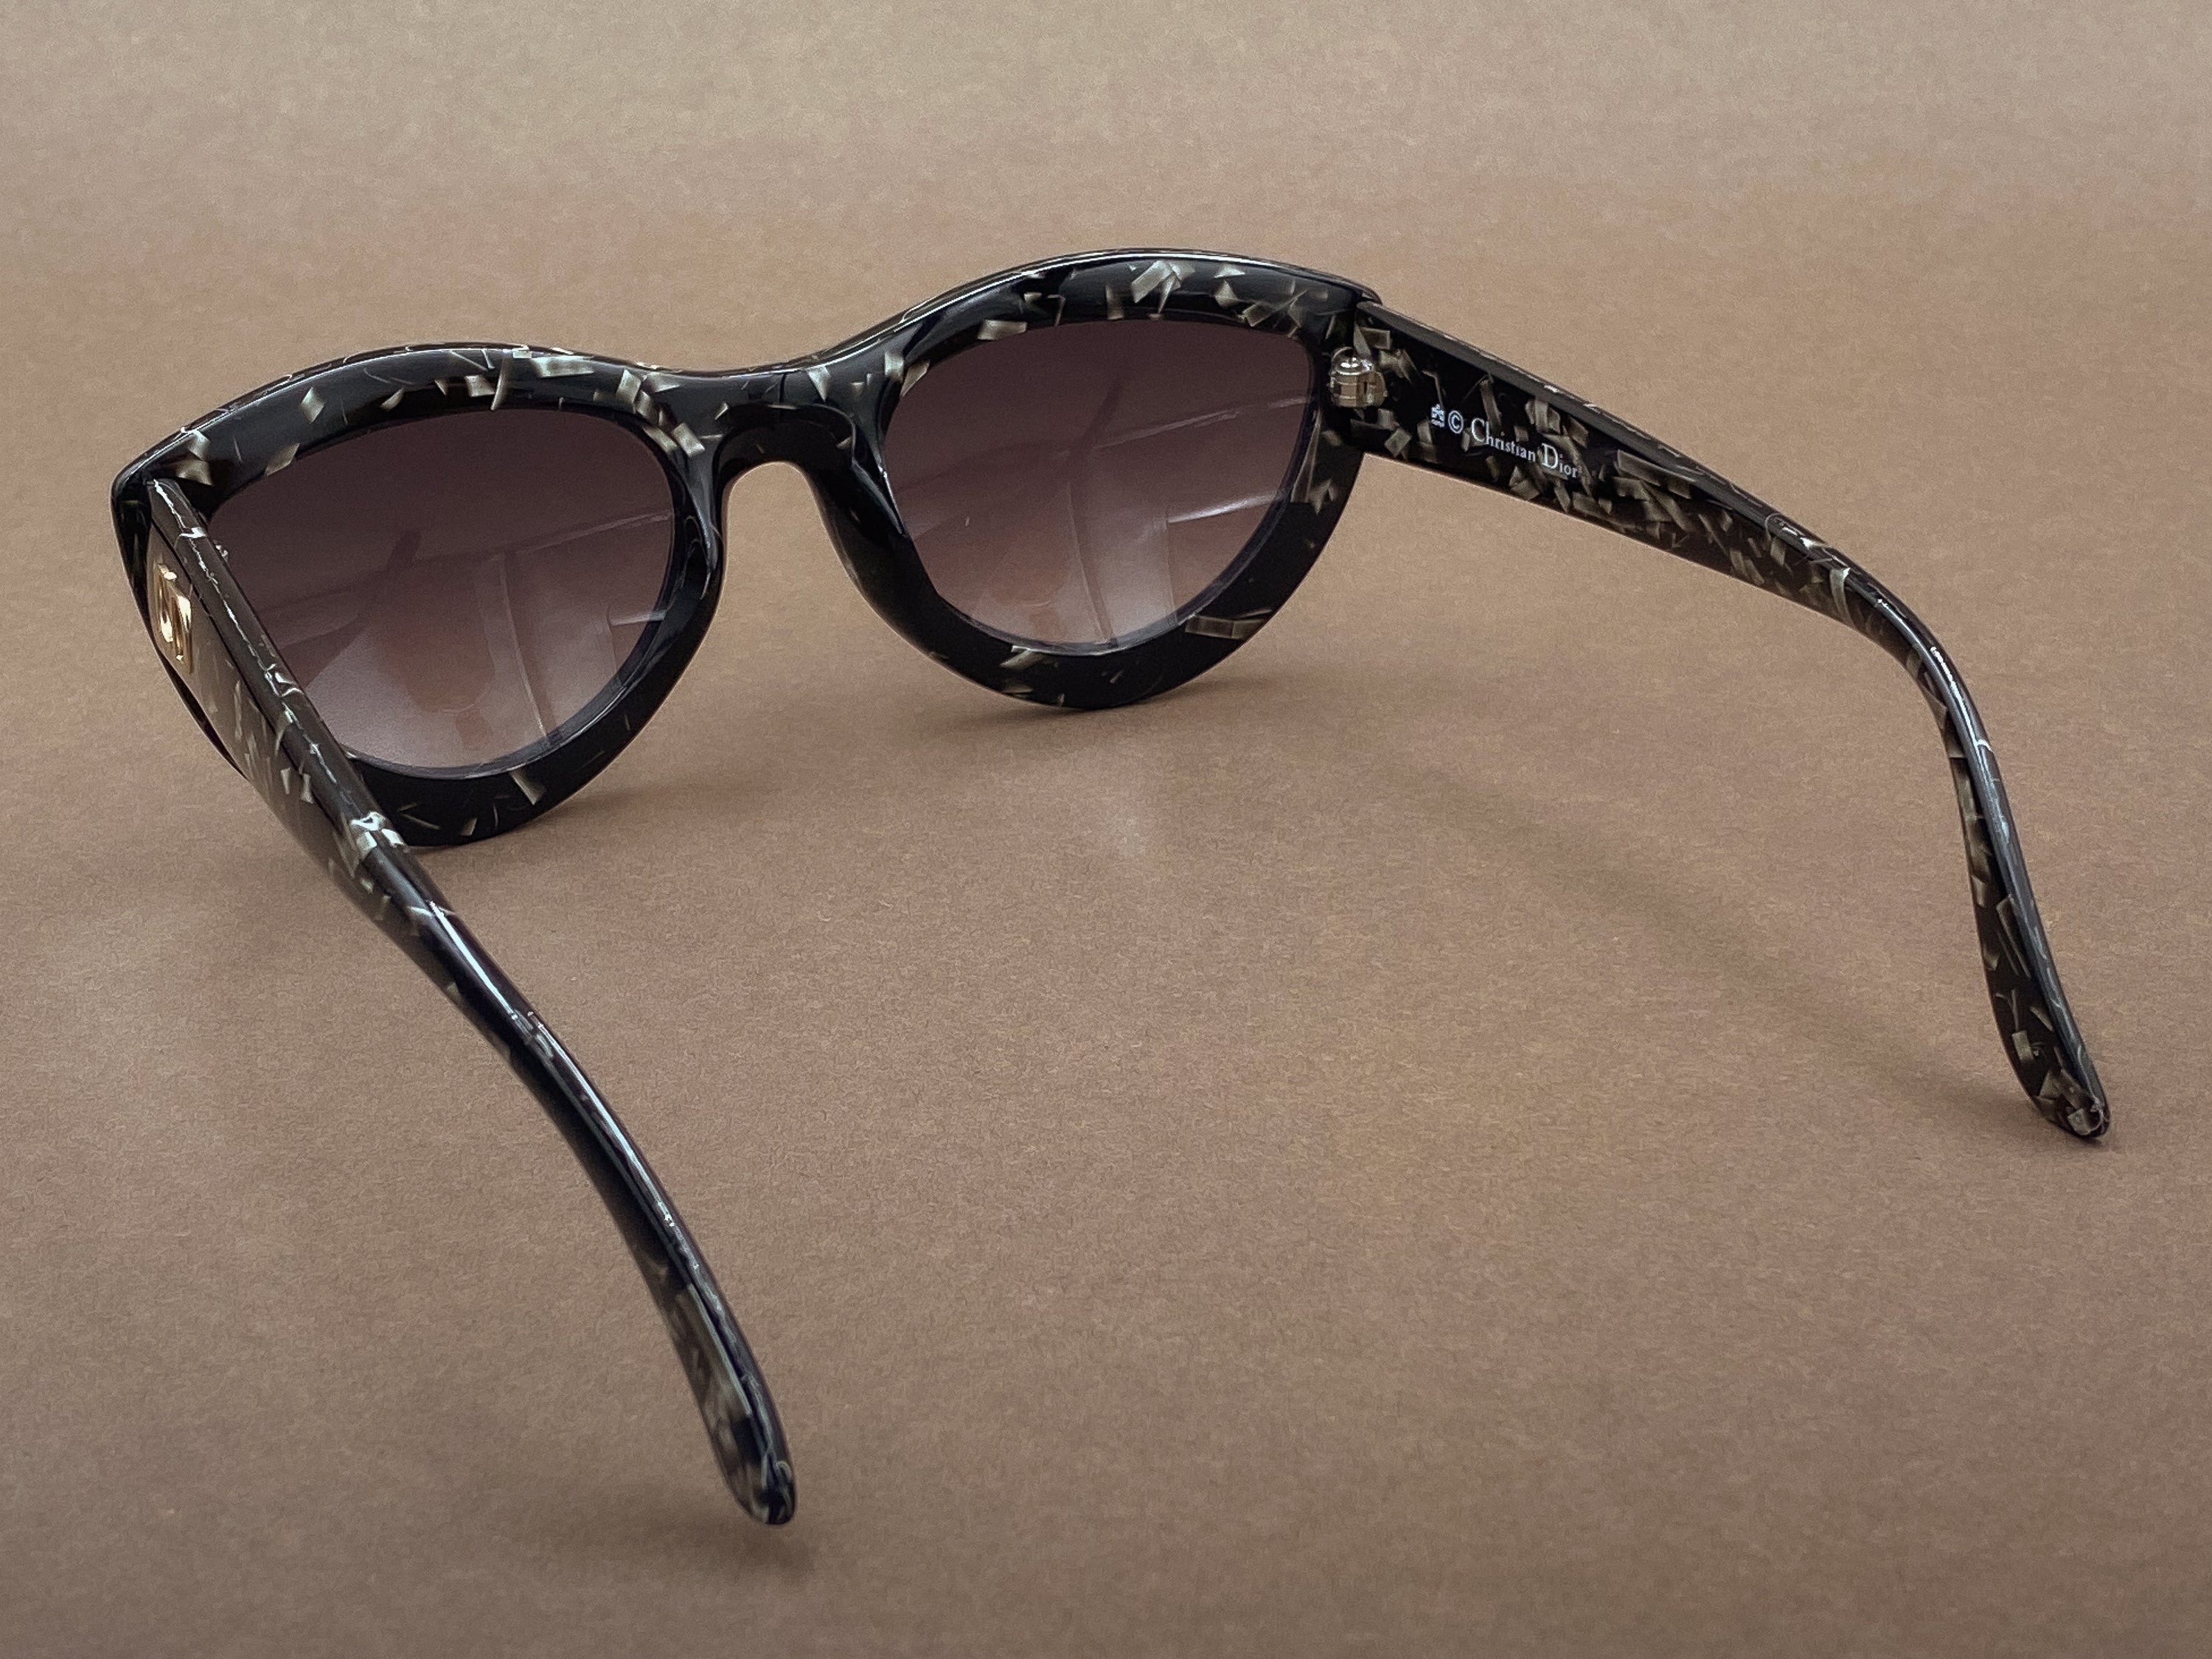 Christian Dior 2907 ladies sunglasses